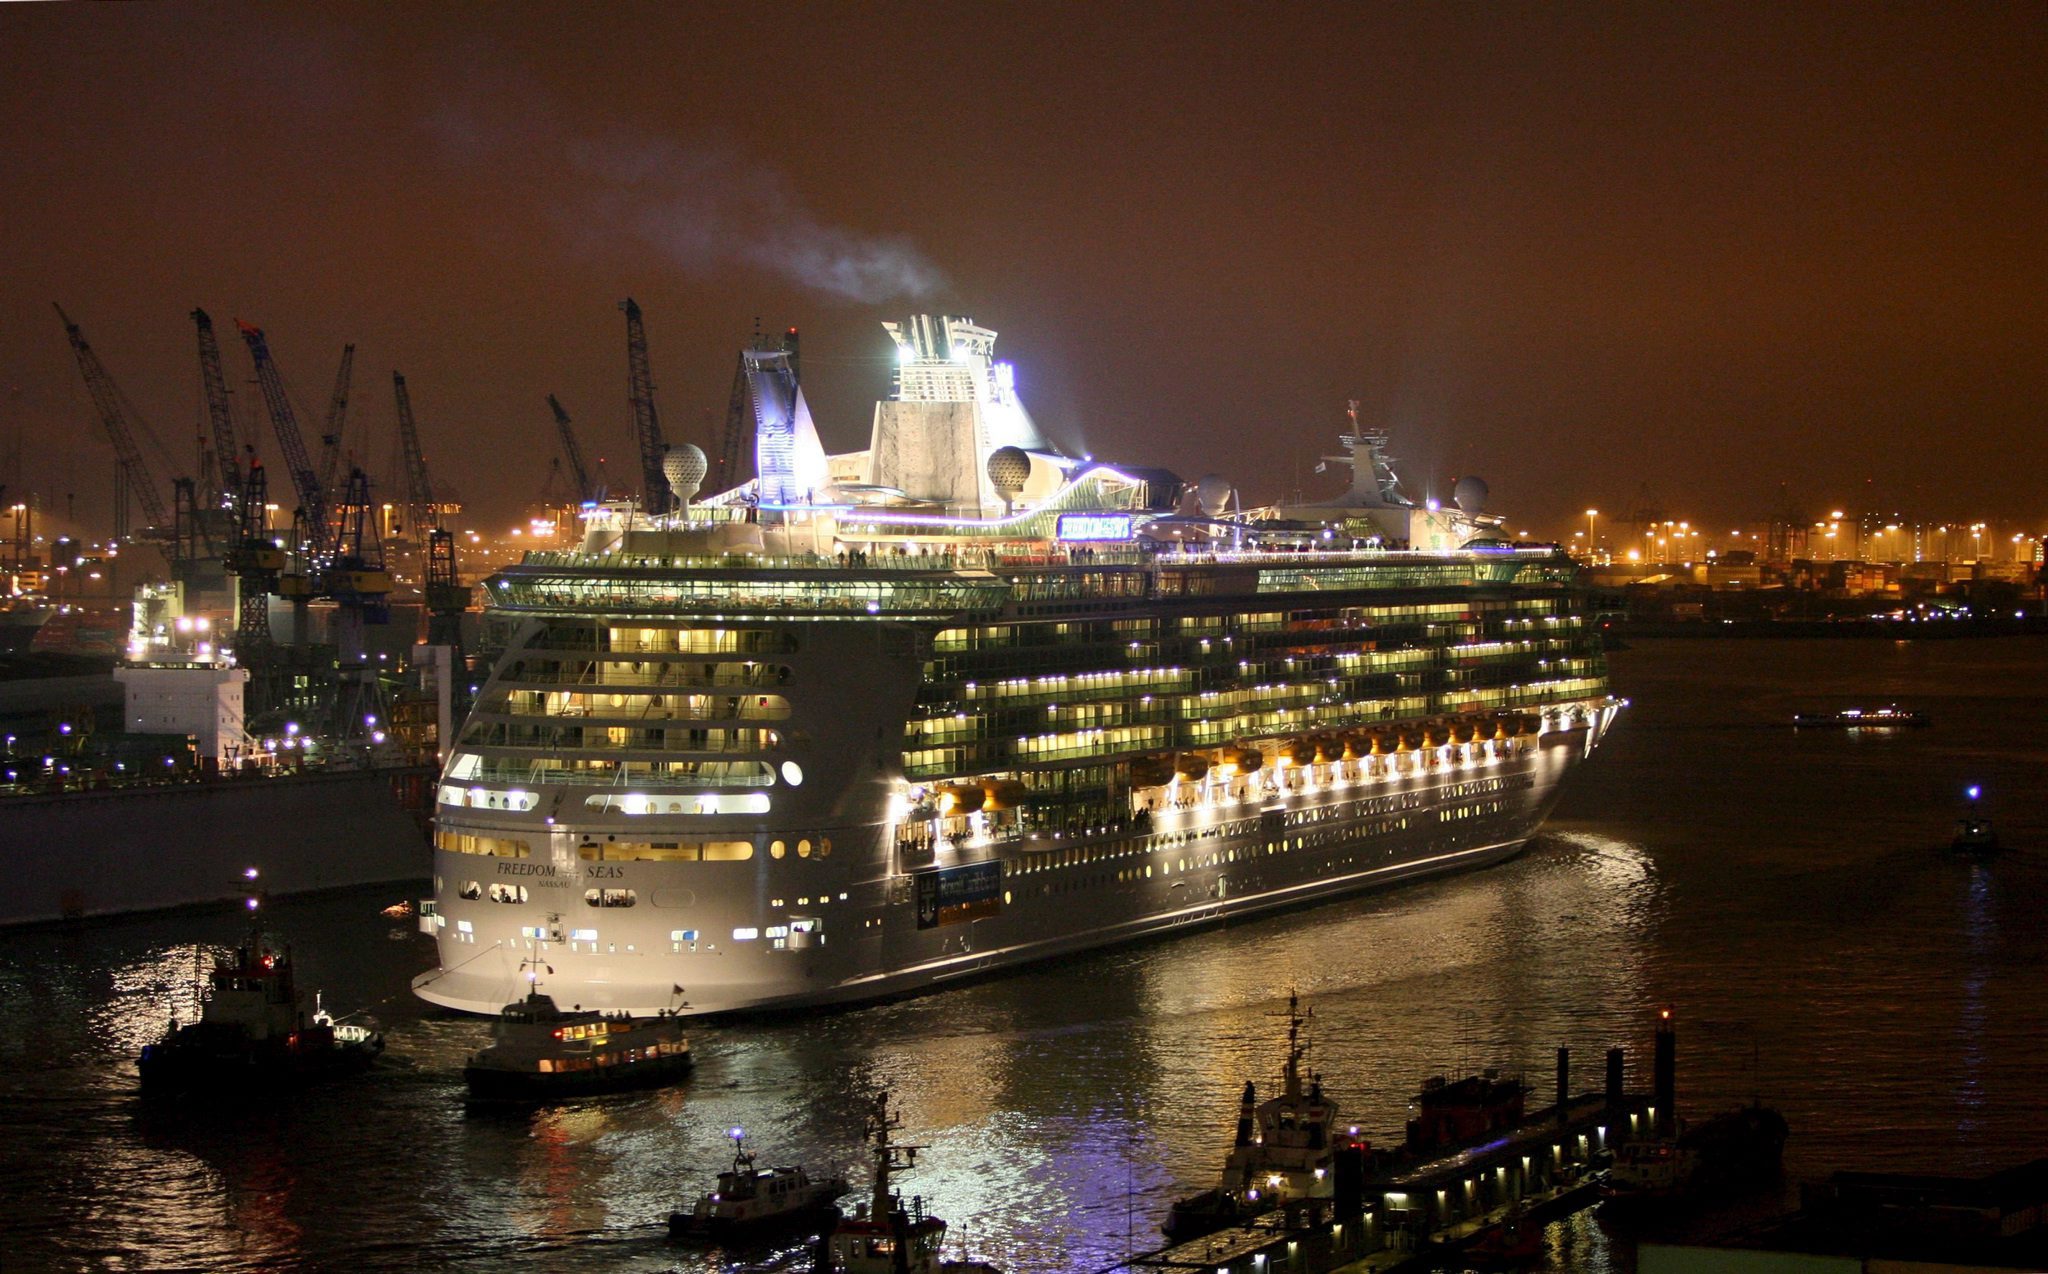 20060417 - ROMA - CRO : GERMANIA: SALPA DA AMBURGO PIU' GRANDE TRANSATLANTICO. 'FREEDOM OF THE SEAS' HA TOLTO IL PRIMATO ALLA 'QUEEN MARY 2'. La 'Freedom of the Seas', la piu' grande nave passeggeri del mondo, in un'immagine d'archivio del 22 aprile 2006 nel porto di Amburgo. La 'Freedom of the Seas ha lasciato oggi Amburgo,nella Germania settentrionale, dopo le ultime rifiniture ed una lussuosa festa inaugurale a bordo. Prima destinazione Oslo, poi Southampton e infine Miami, da dove il 4 giugno partira' la prima vera crociera. La nave e' lunga 339 metri e pesca 8,5 metri, stazza lorda 158 mila tonnellate. E' piu' larga di 56 metri e pesa di piu' anche se e' leggermente piu' corta della 'Queen Mary 2', finora detentrice del primato. KAY NIETFELD-ARCHIVIO / ANSA / PAL